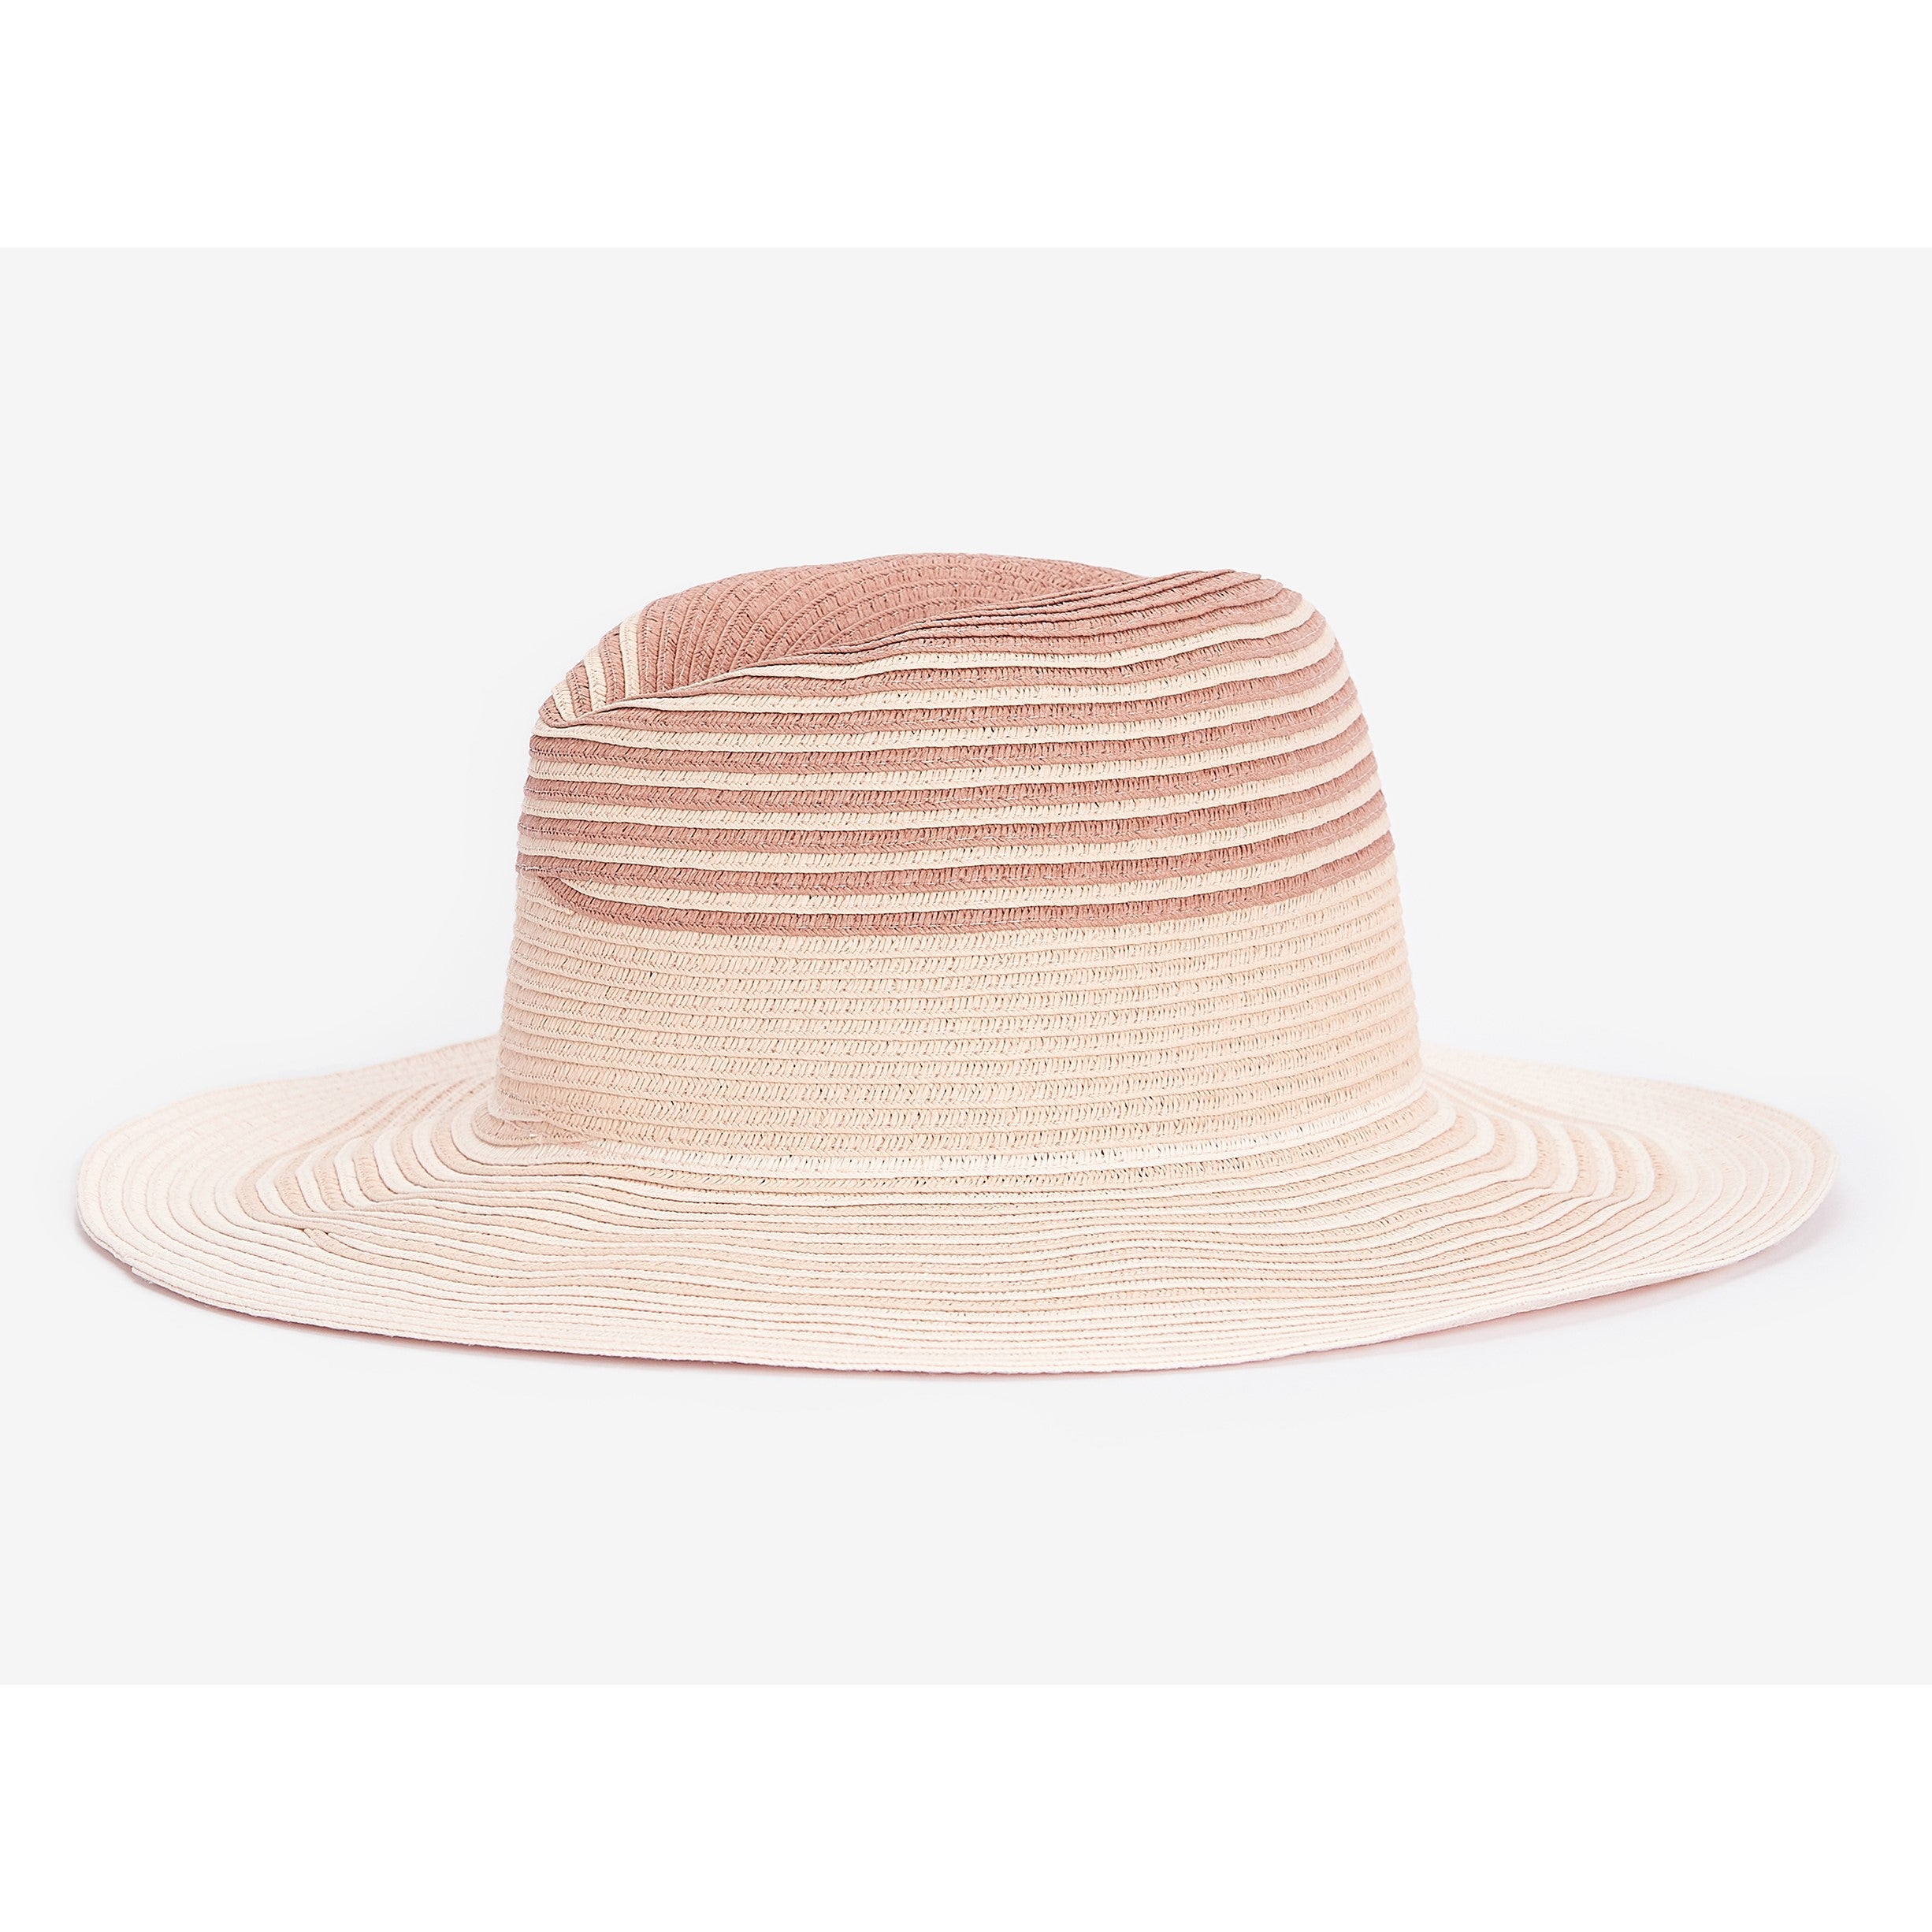 Barbour Adria Ombre Fedora Ladies Summer Hat - Primose Pink